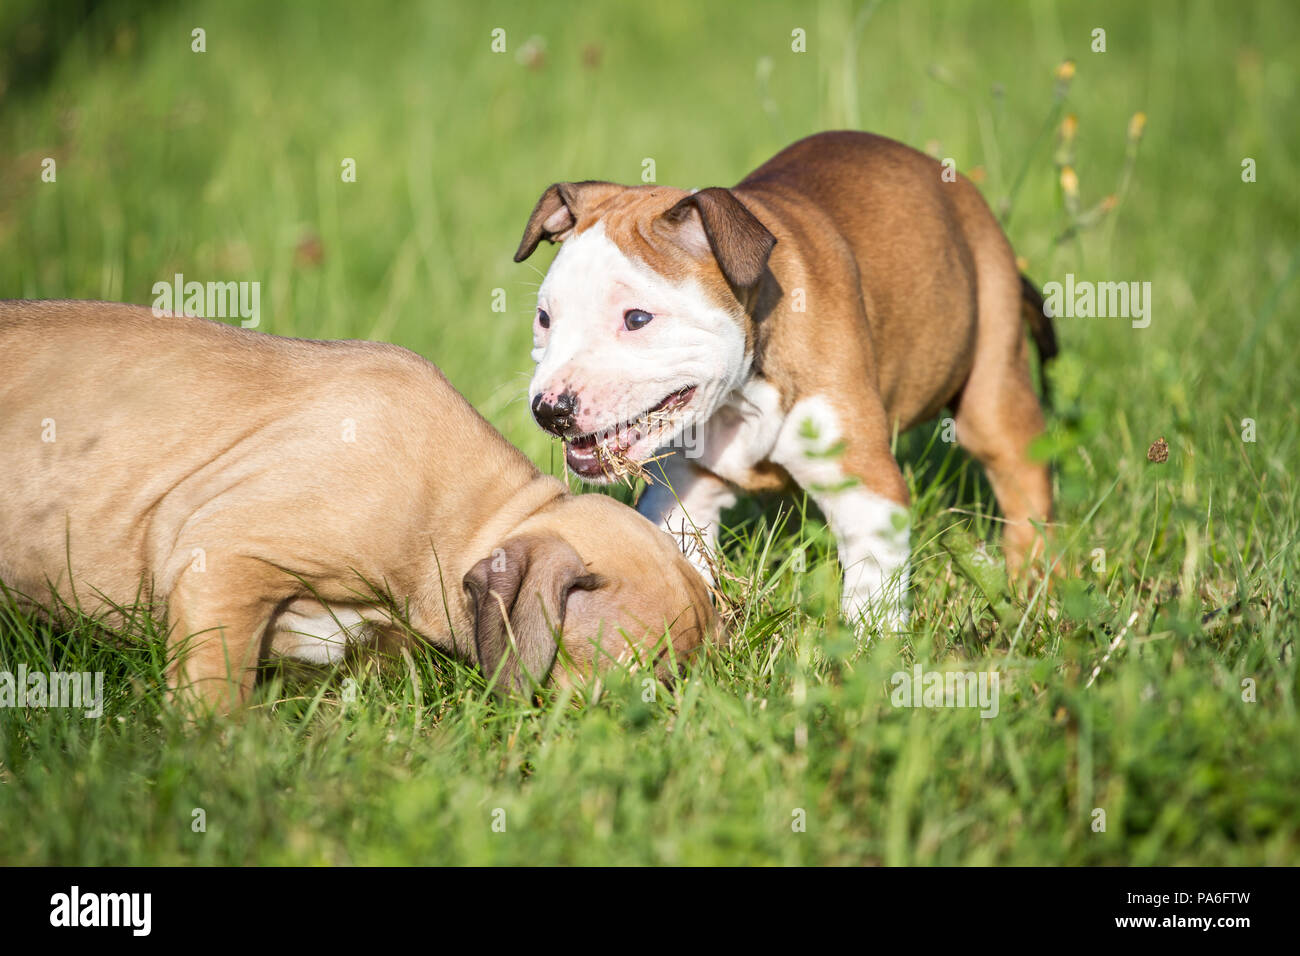 Chiots de type Bulldog jouant sur une prairie Banque D'Images